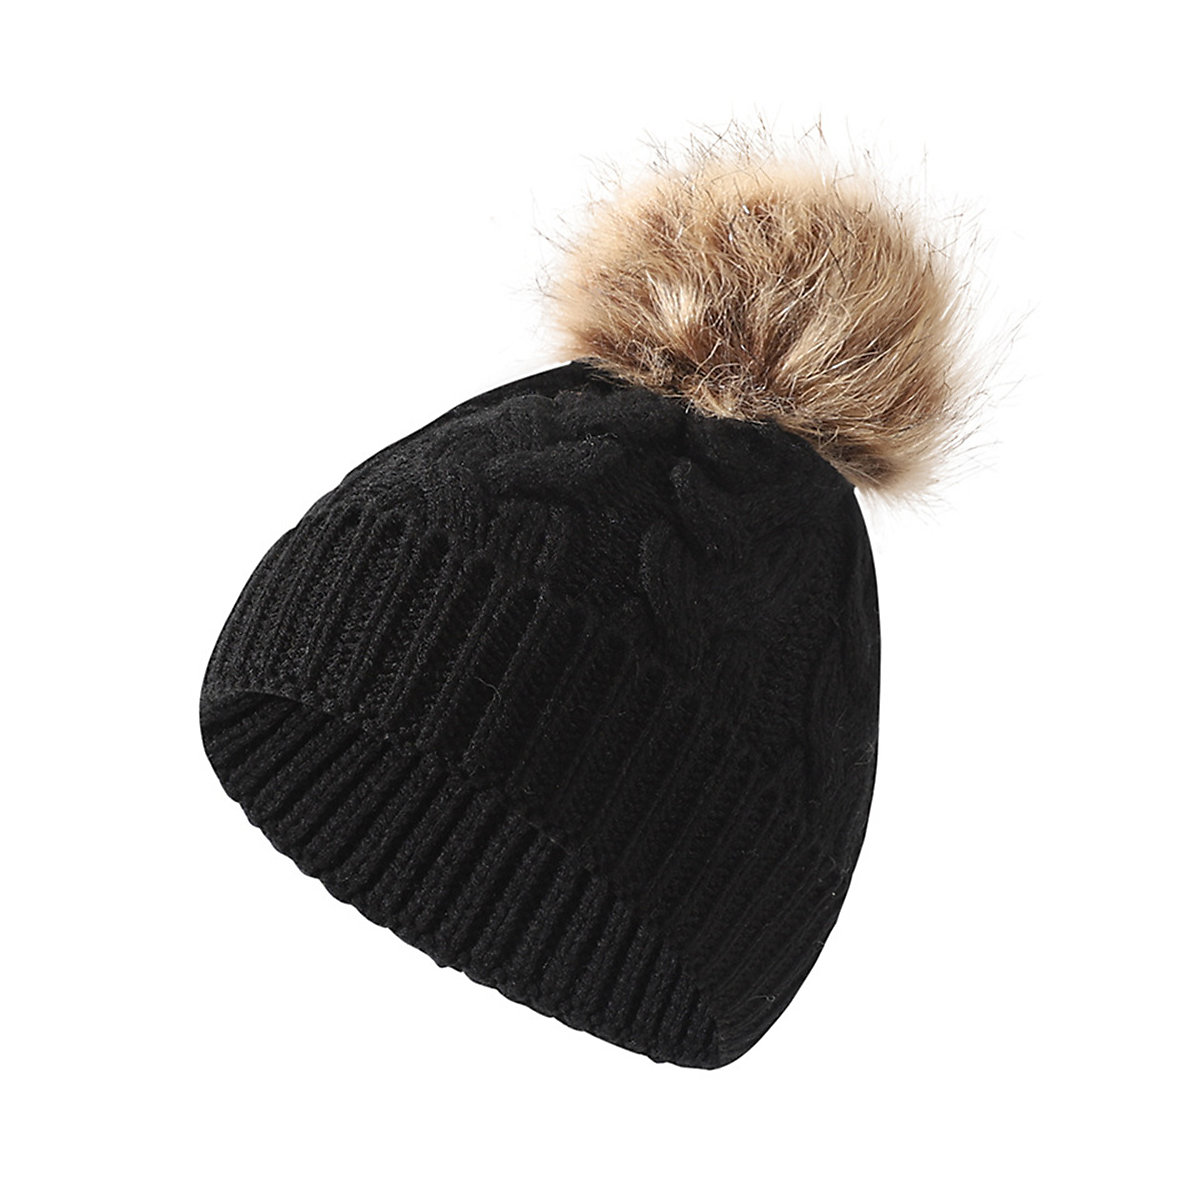 Vetaka Winter Beanie Mütze mit Bommel für Kinder schwarz